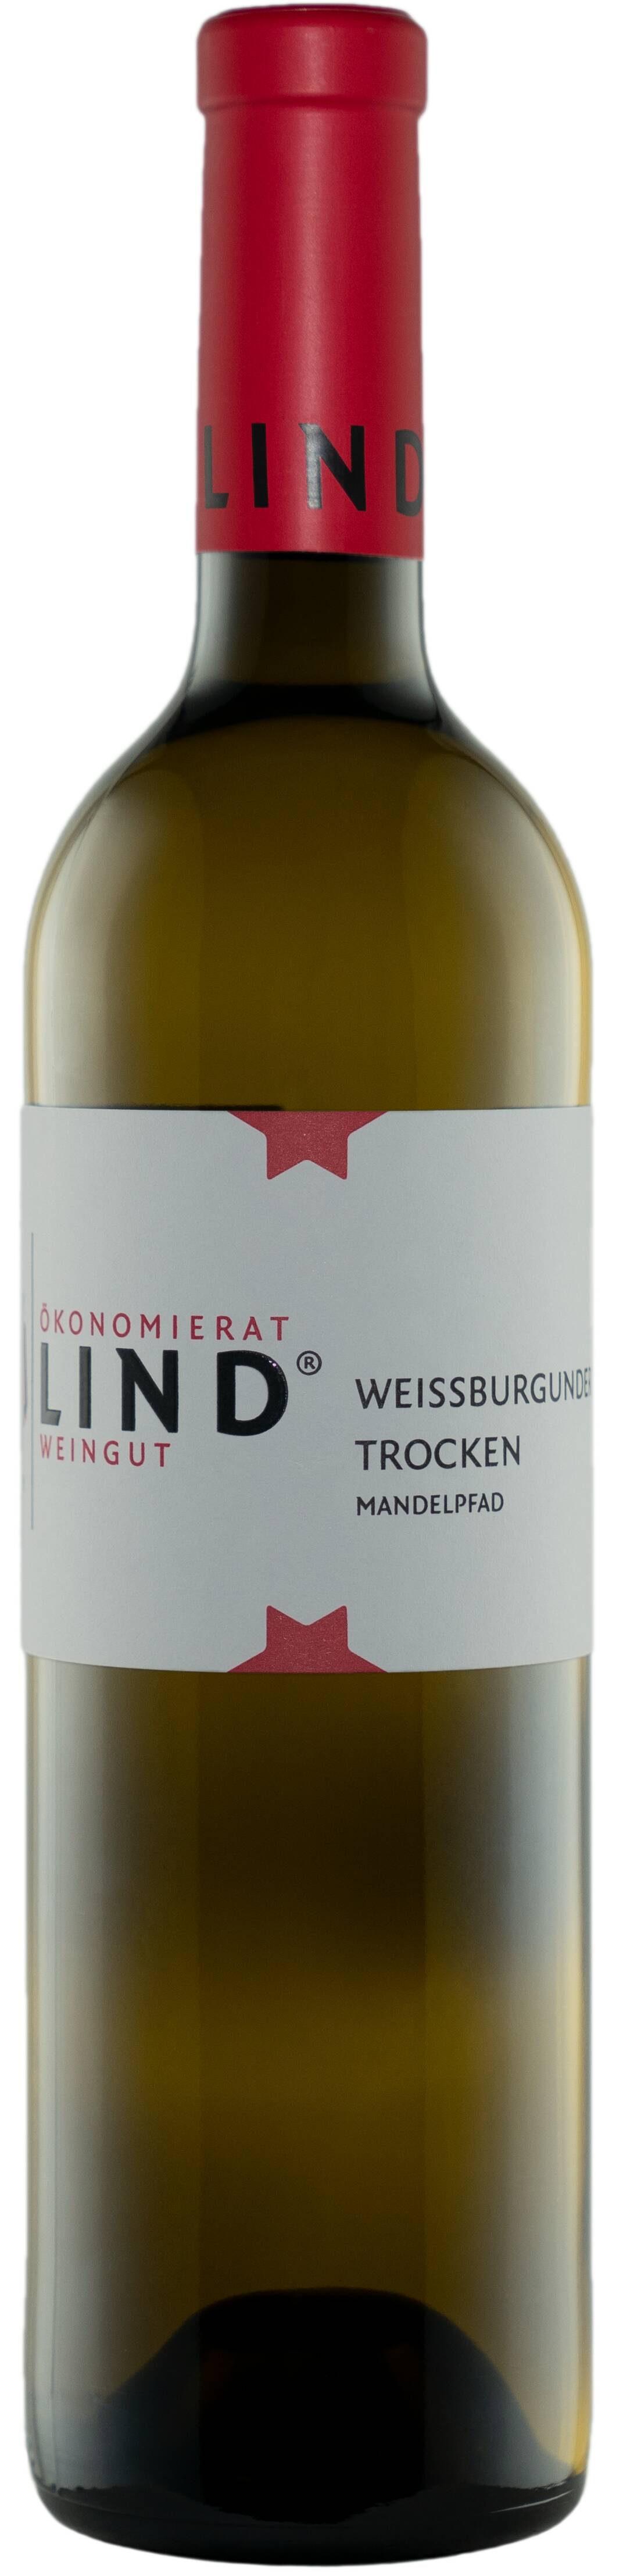 Weissburgunder trocken  2019